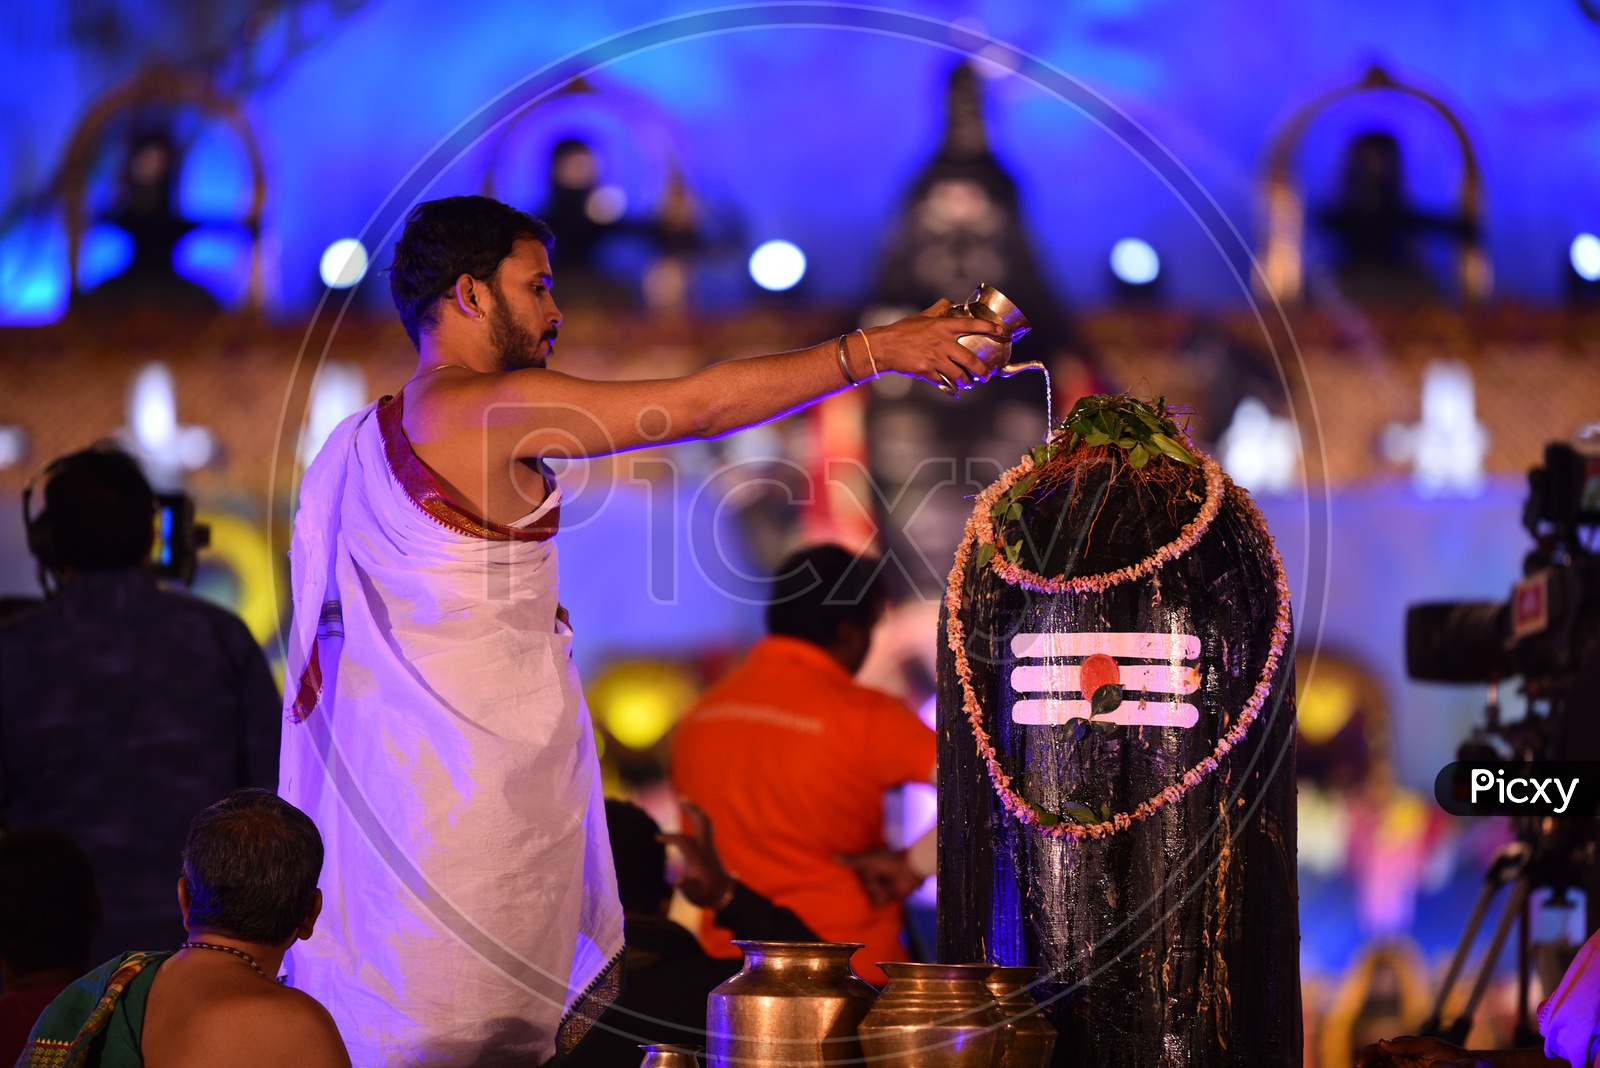 A Pujari performing rites to Shiva Linga